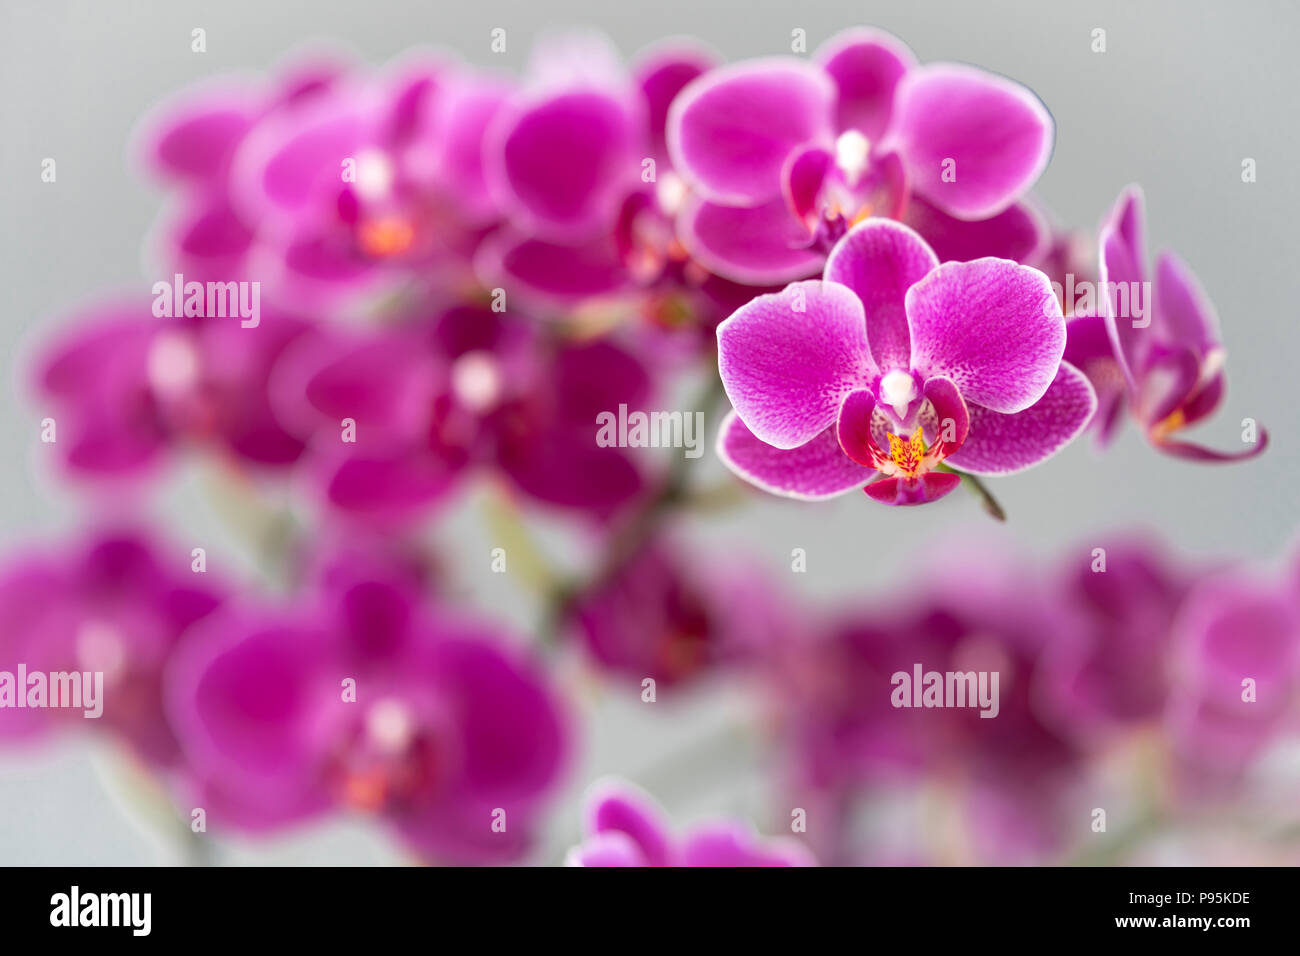 Una messa a fuoco stretta su una falda color magenta/rosa orchidea con progressivamente fuori fuoco fiori dietro dare un piacevole effetto di messa a fuoco Foto Stock